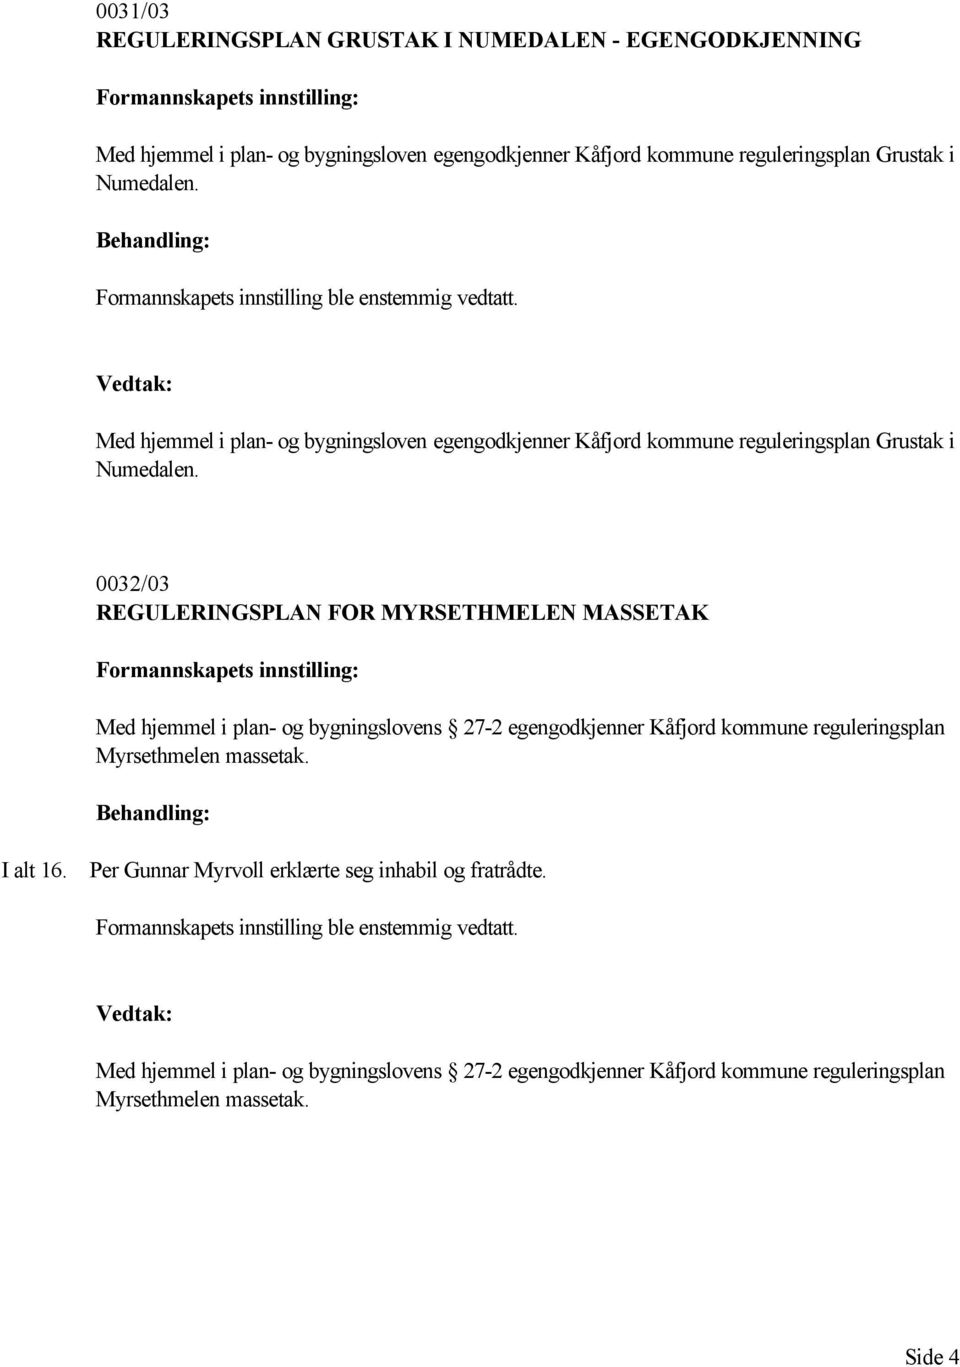 0032/03 REGULERINGSPLAN FOR MYRSETHMELEN MASSETAK Med hjemmel i plan- og bygningslovens 27-2 egengodkjenner Kåfjord kommune reguleringsplan Myrsethmelen